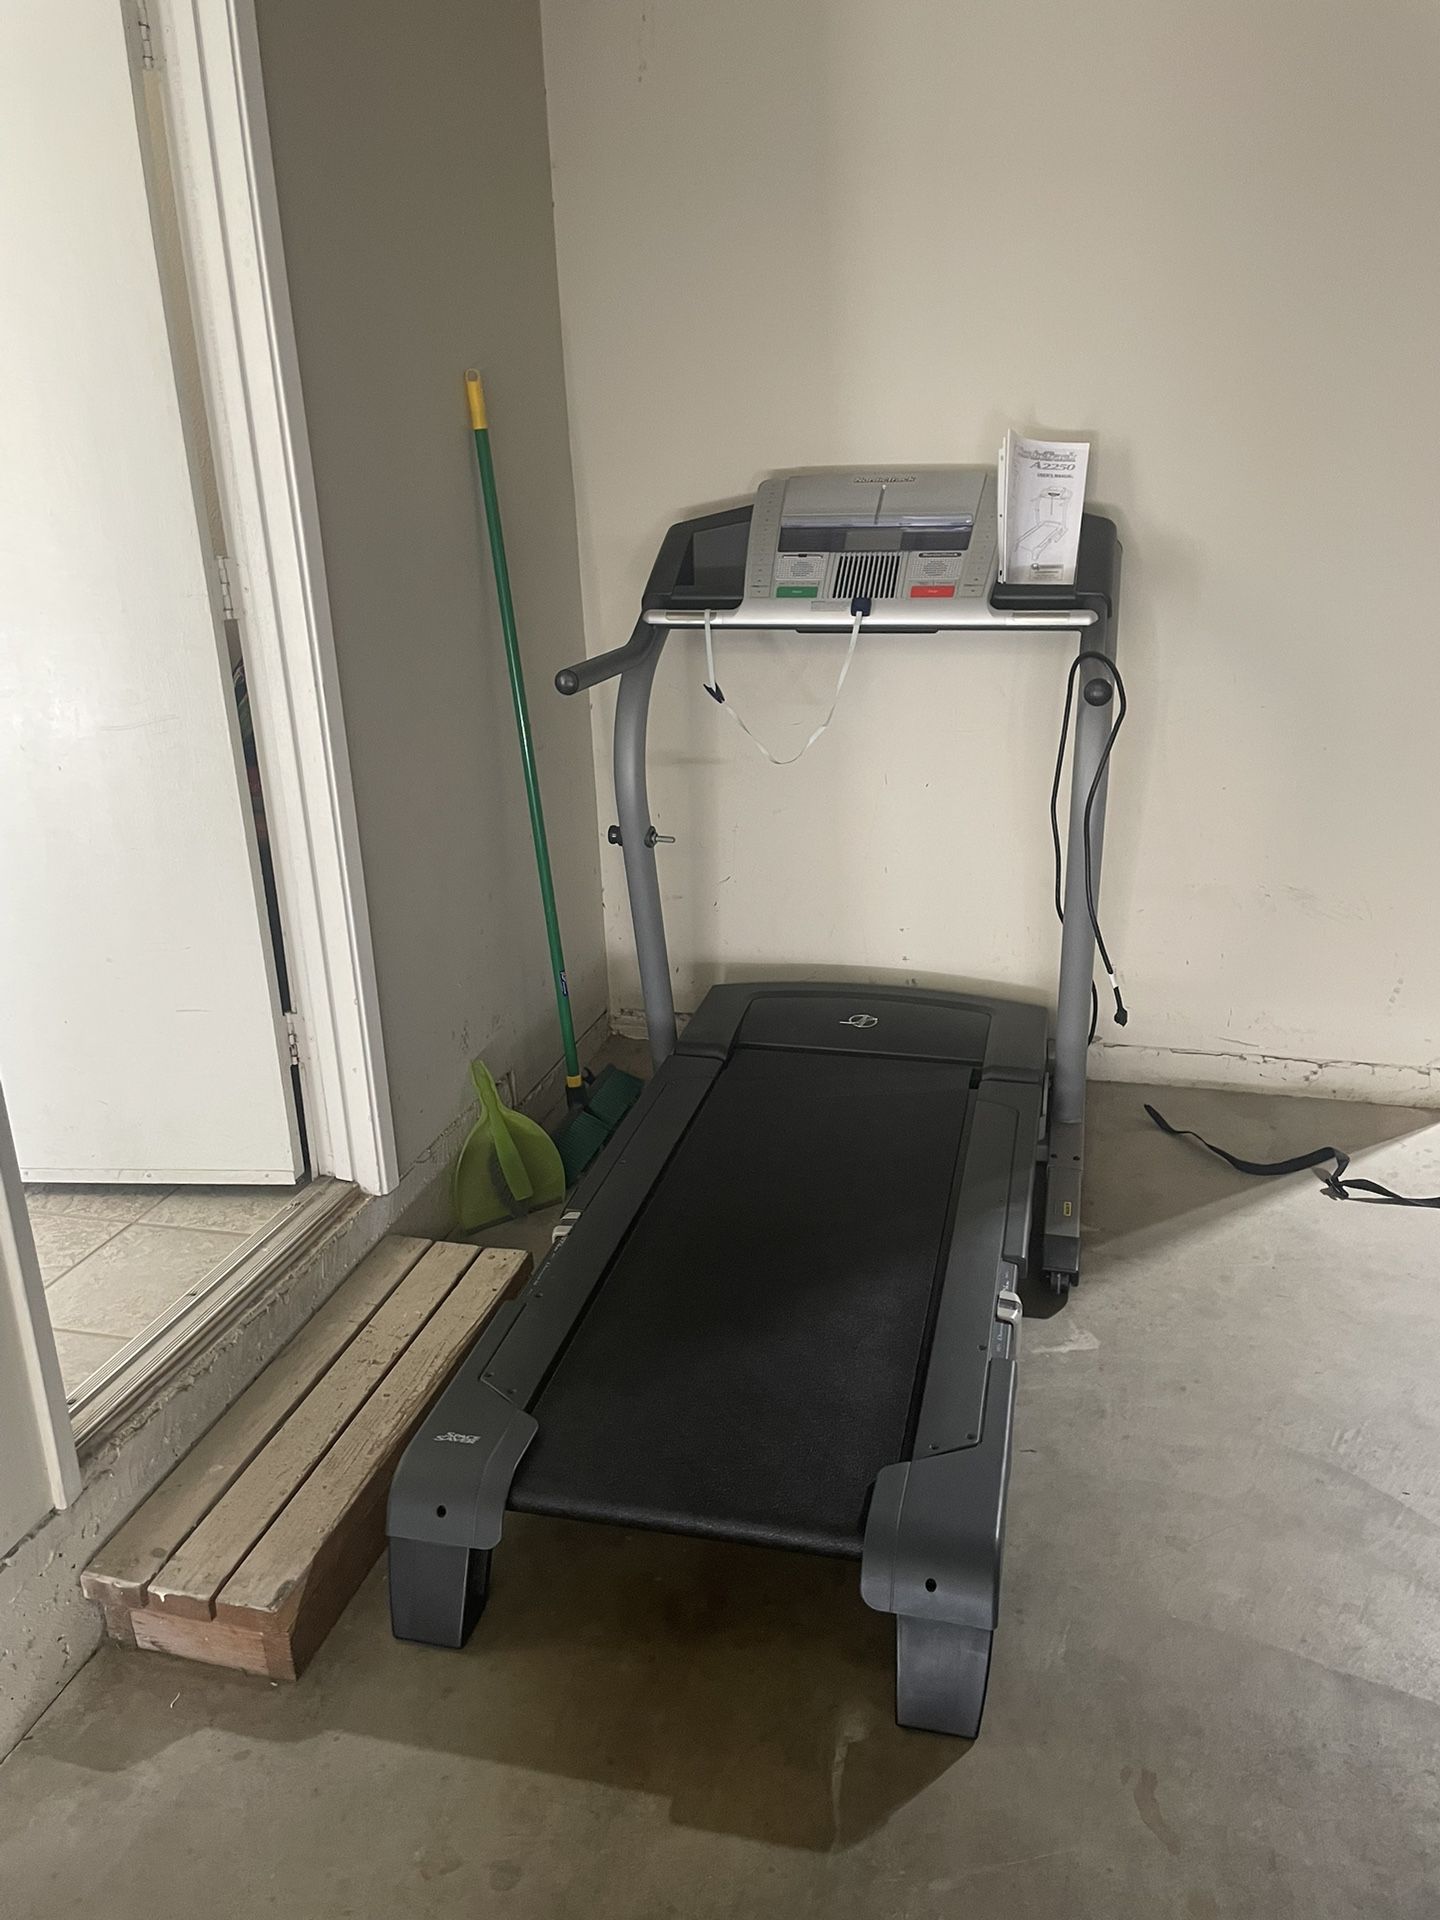 NordicTrack A2250 Treadmill 